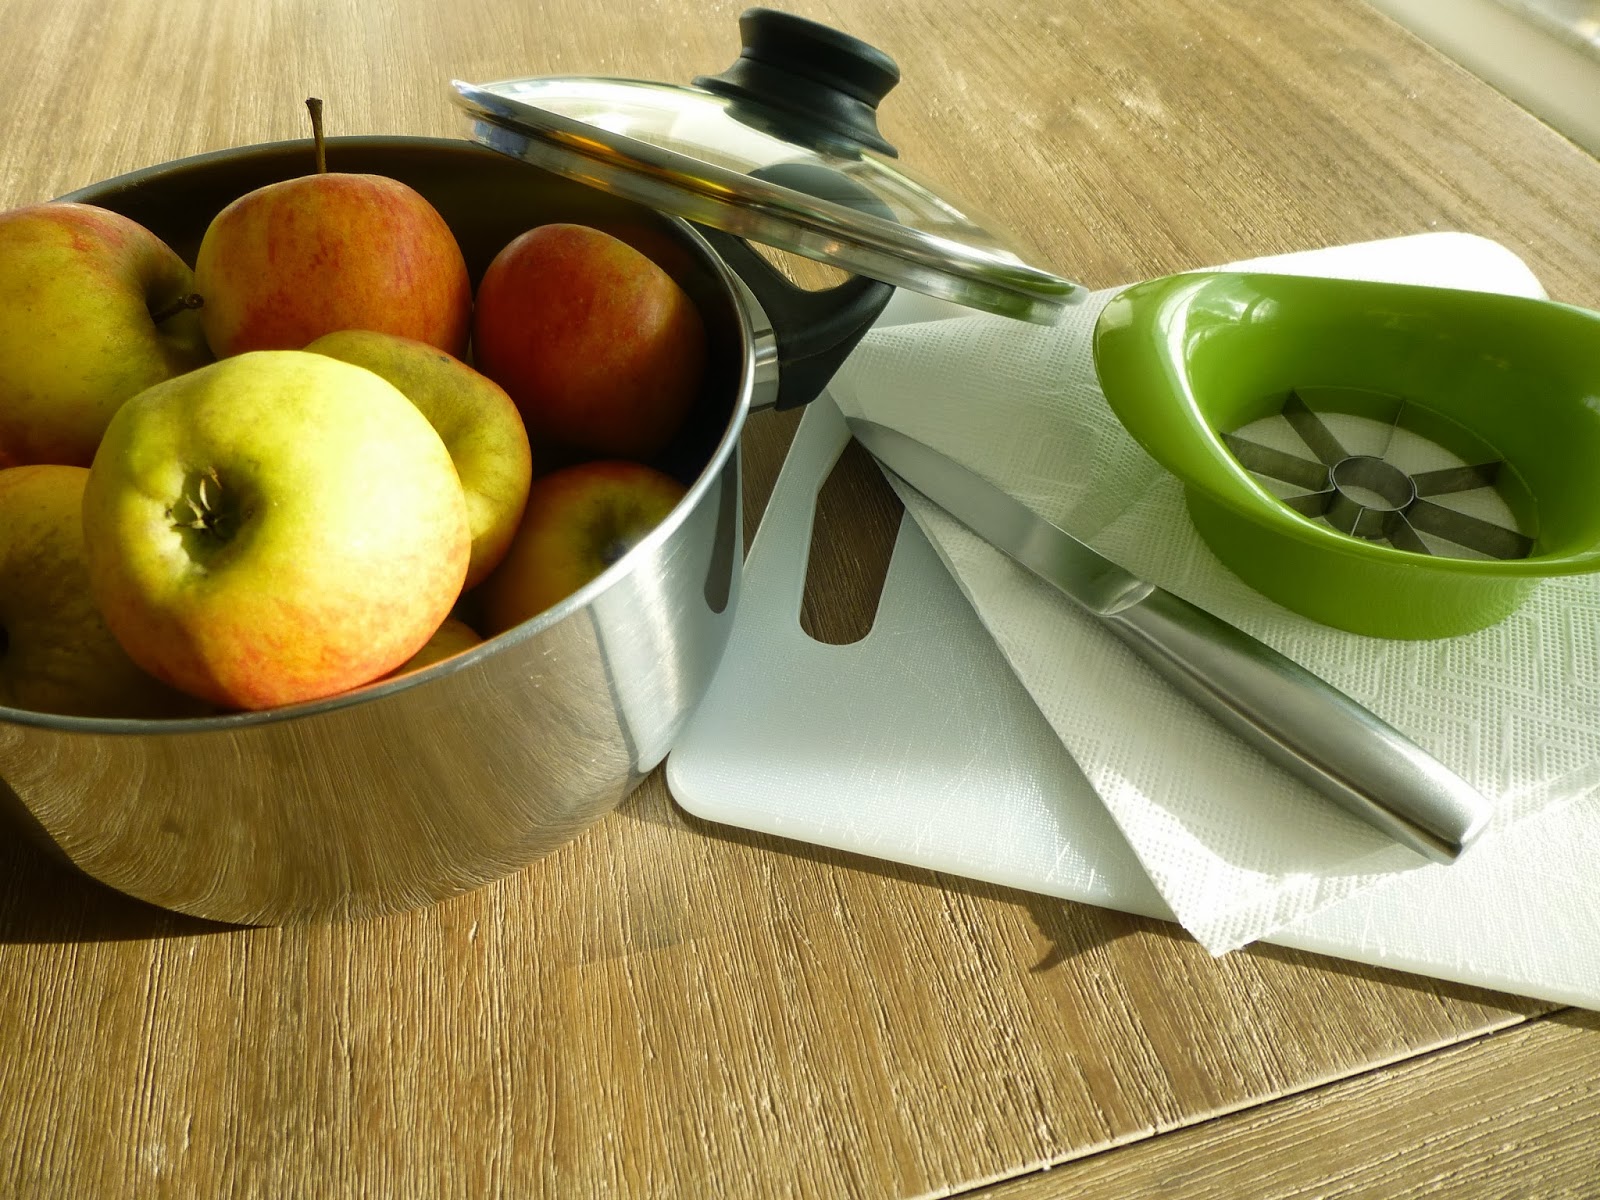 süß und köstlich: Apfel-Kompott mit viiiiiel Zimt...